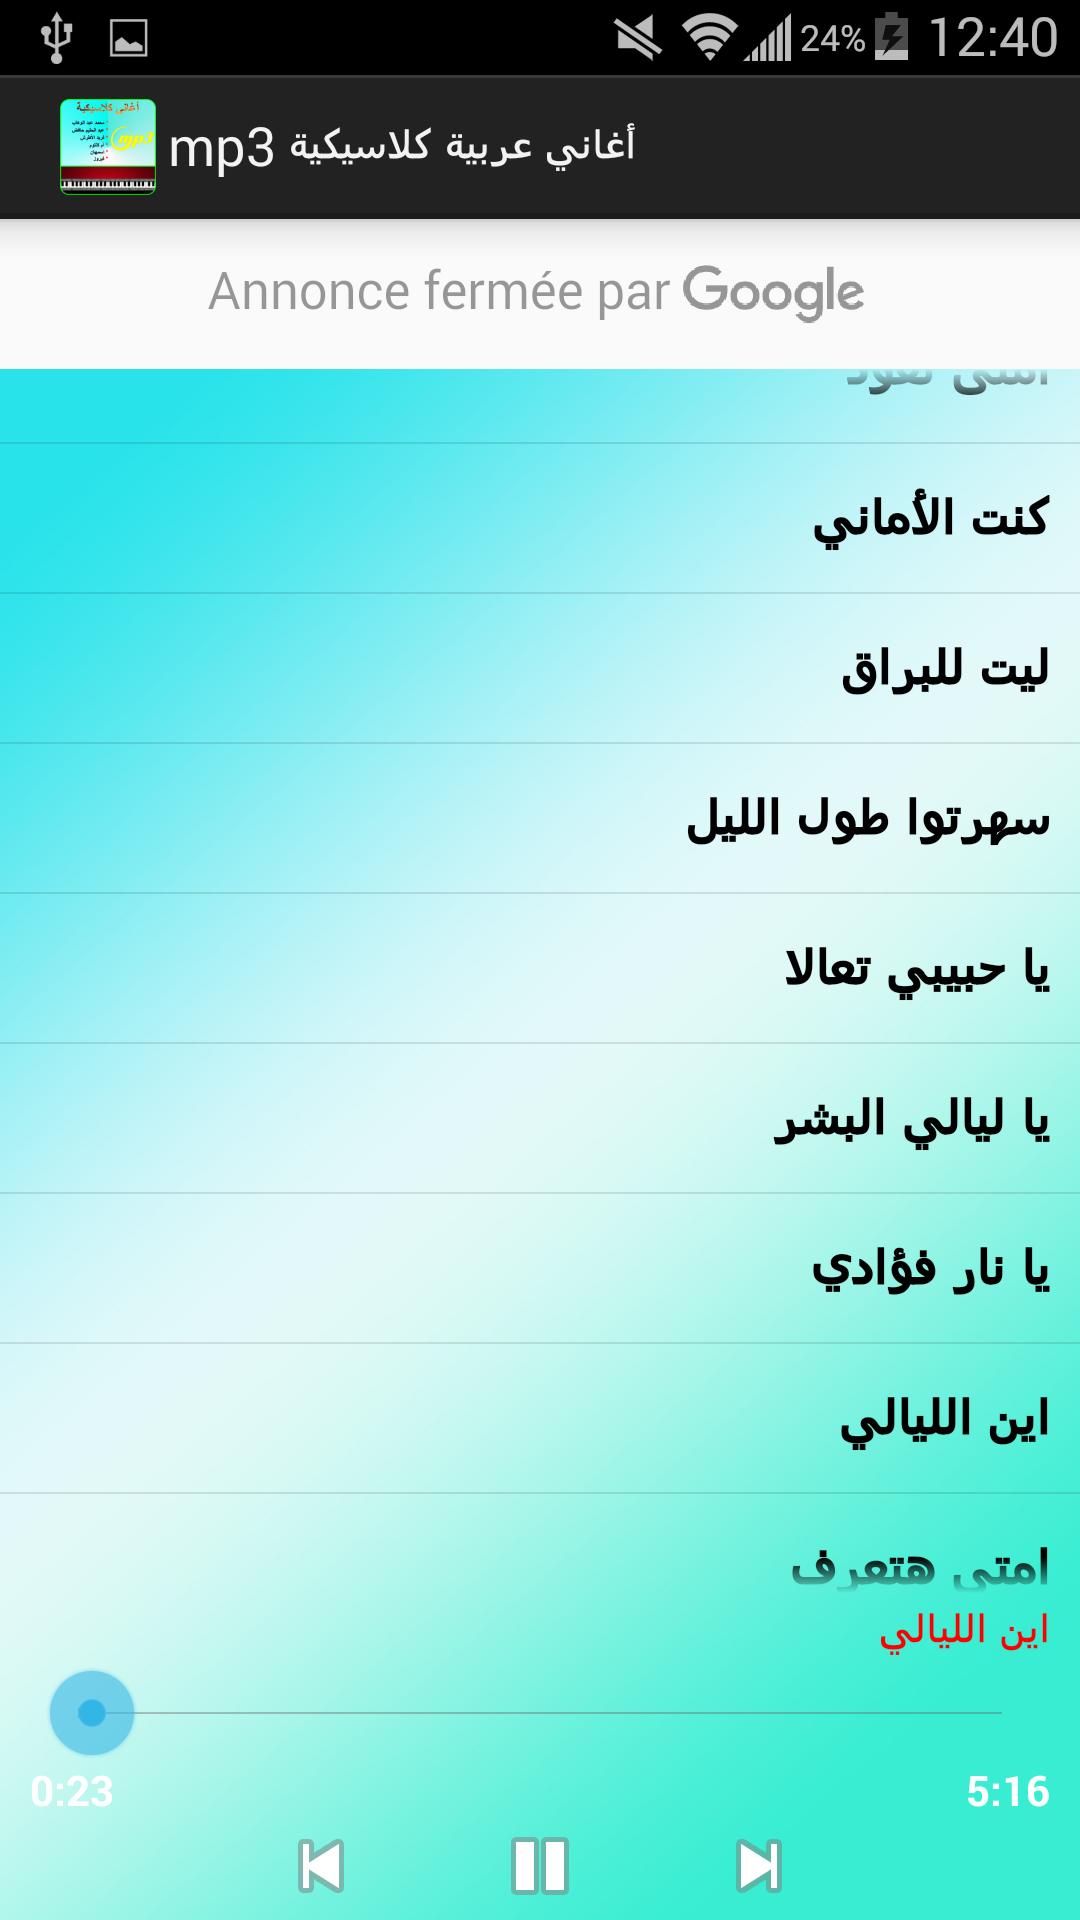 اغاني كلاسيكية عربية Mp3 For Android Apk Download